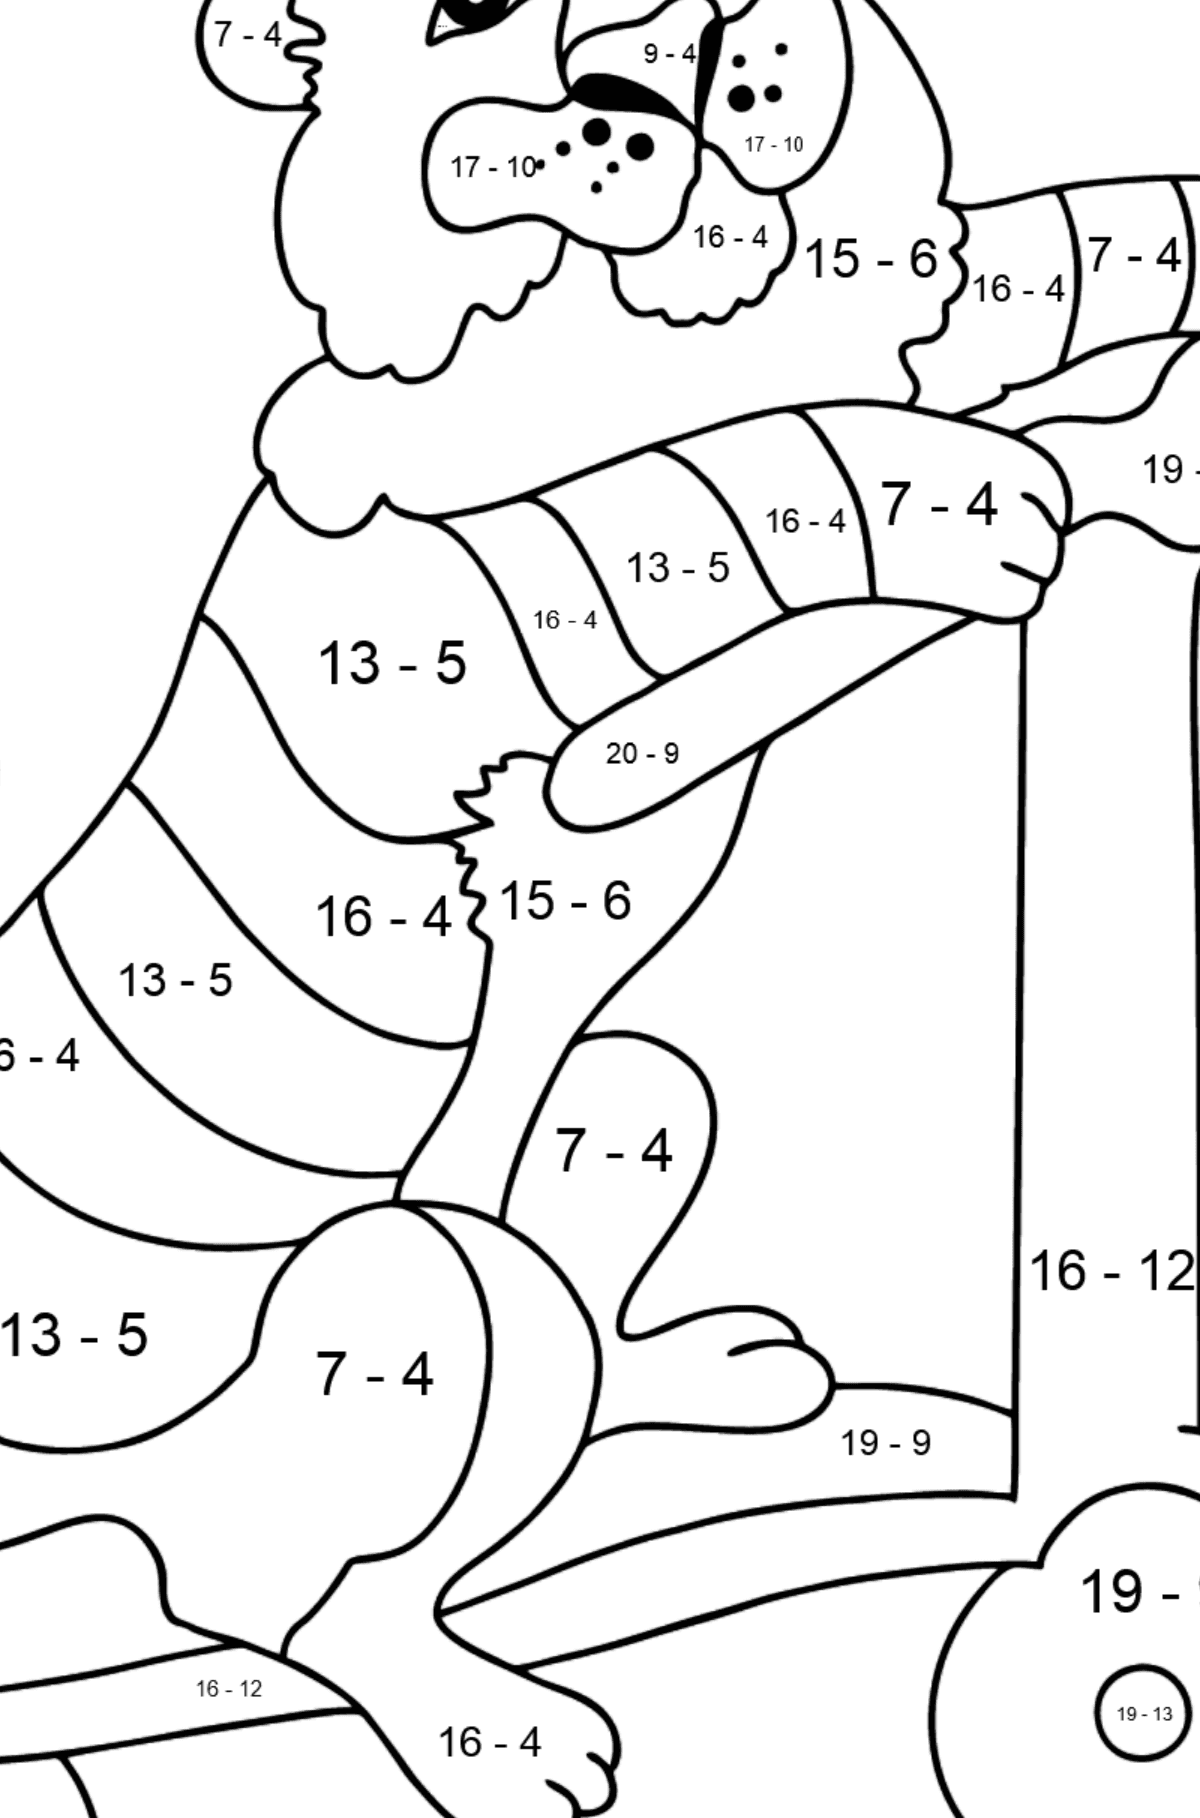 Ein Tiger zum Ausmalen auf einem ausgefallenen Roller - Mathe Ausmalbilder - Subtraktion für Kinder